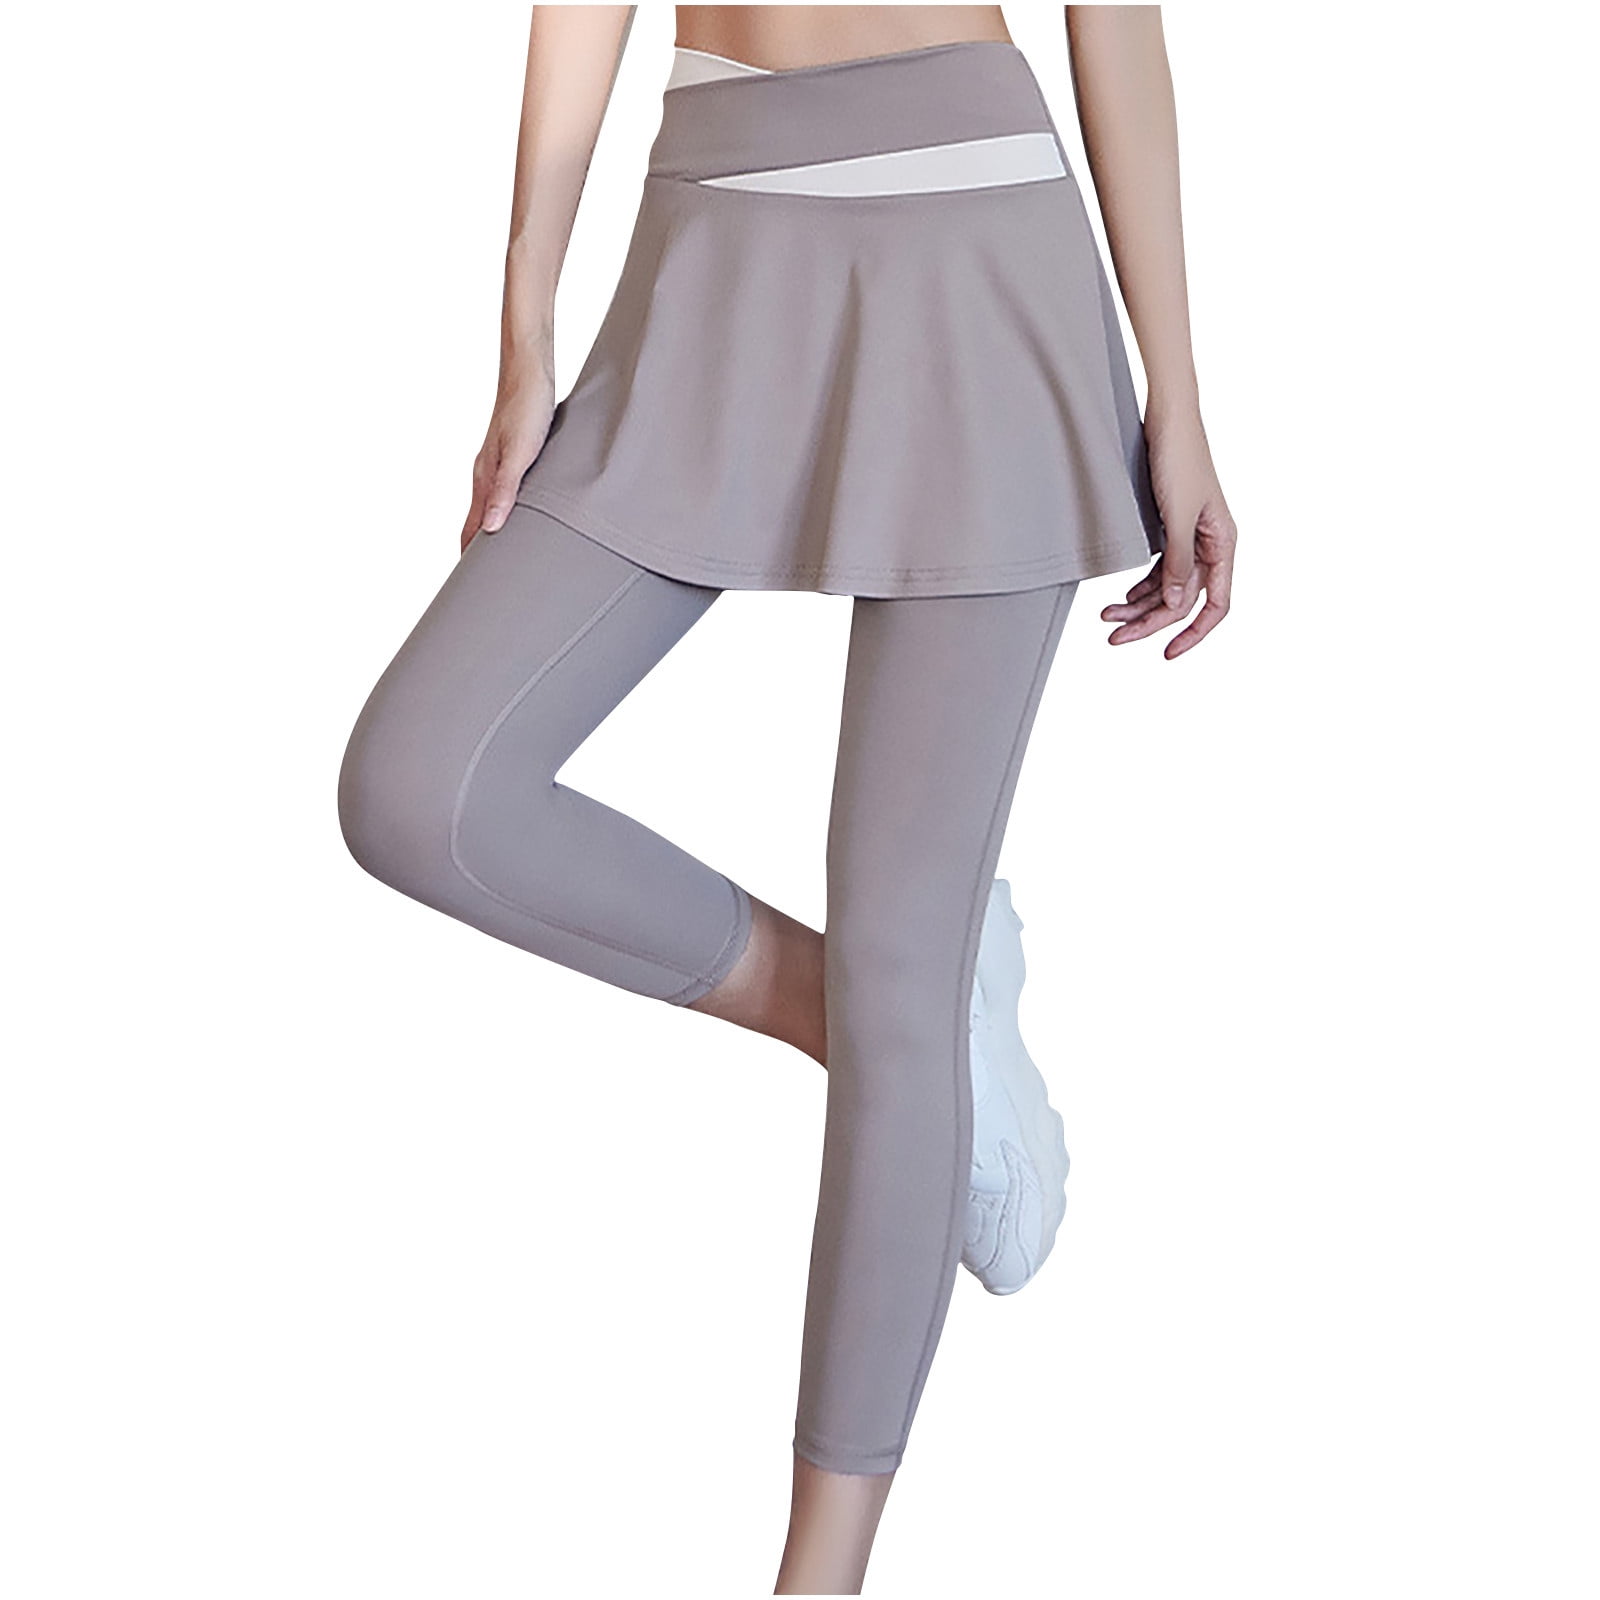 ANIVIVO Skirted Leggings for Women, Athletic Tennis Skirt with Leggings  Pockets Tennis Clothing(AllBlack Large)